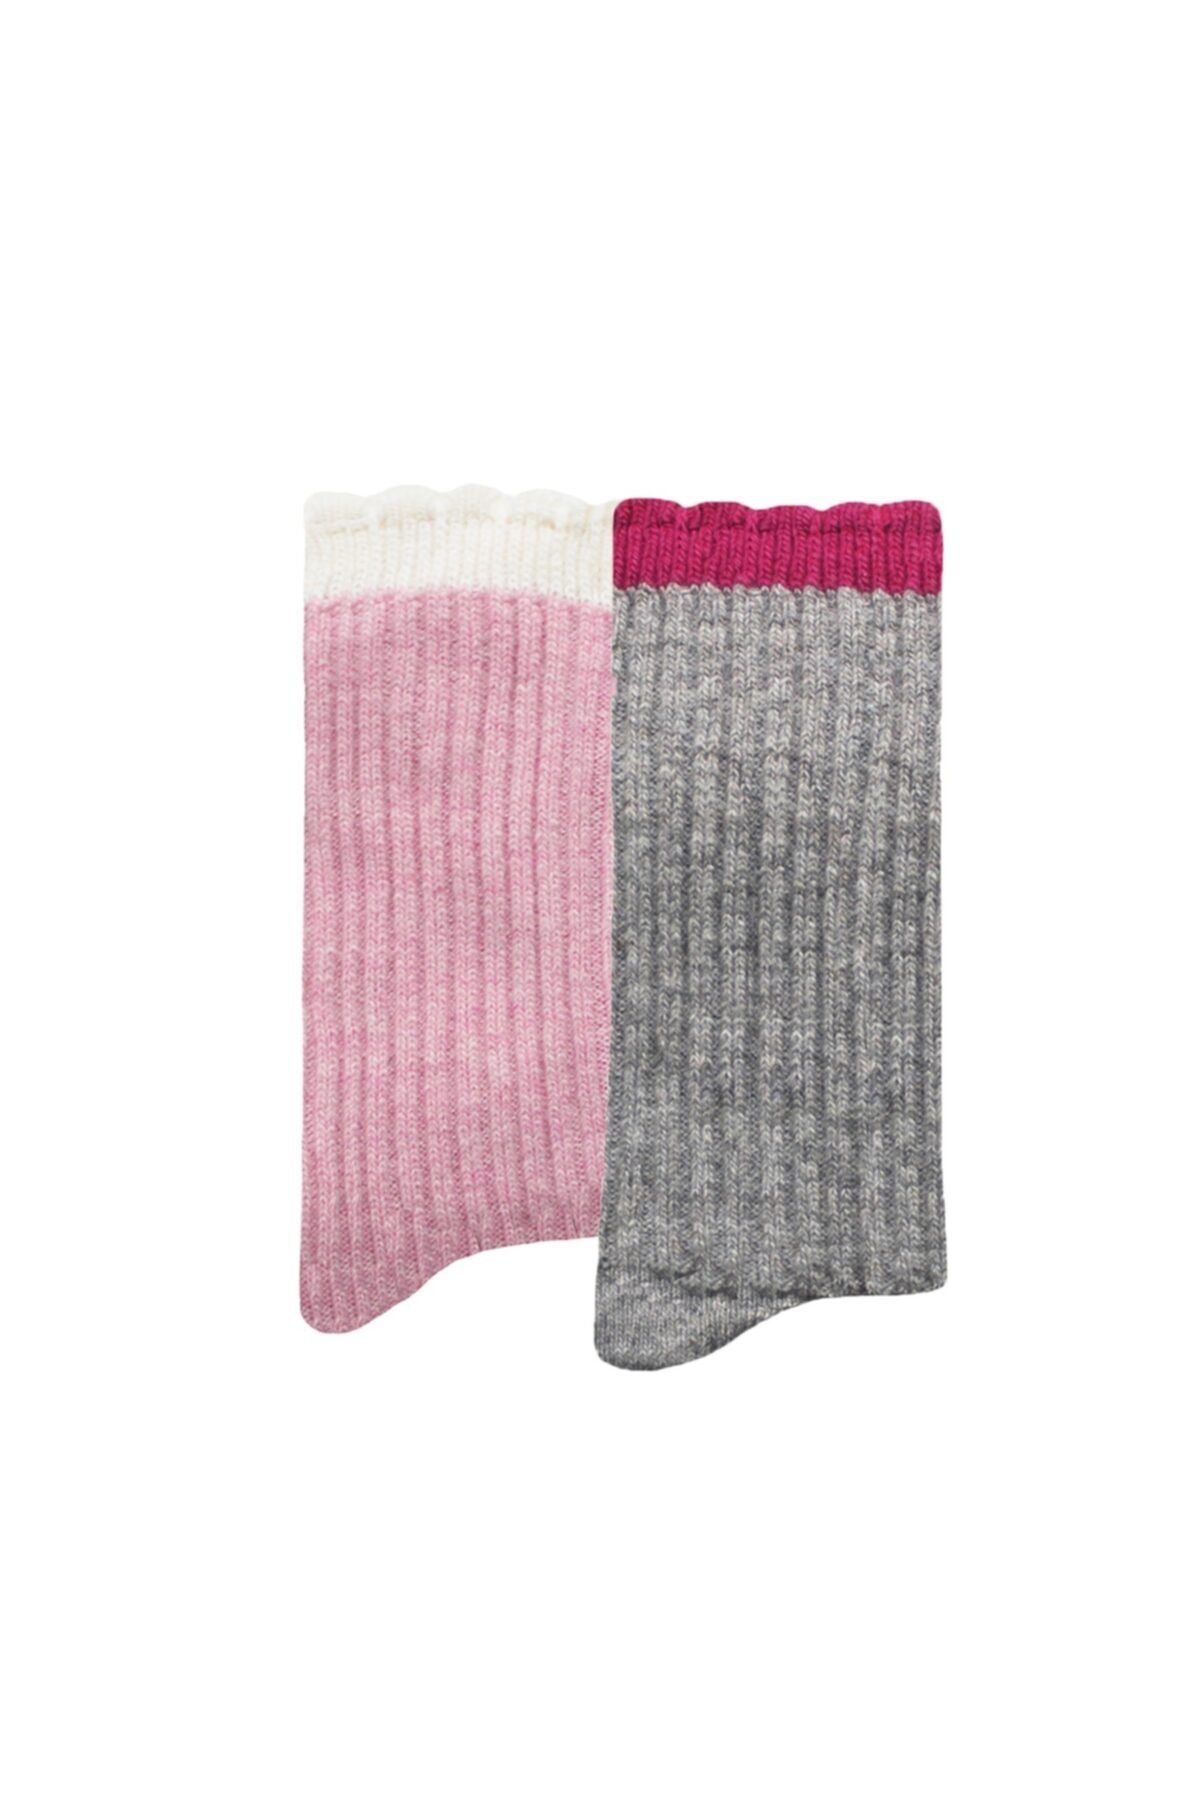 UNLIMITED LEGWEAR 2li Kalın Kışlık Yün Ve Kaşmir Karışımlı Bileği Dilimli Kadın Çorap Gri/pembe